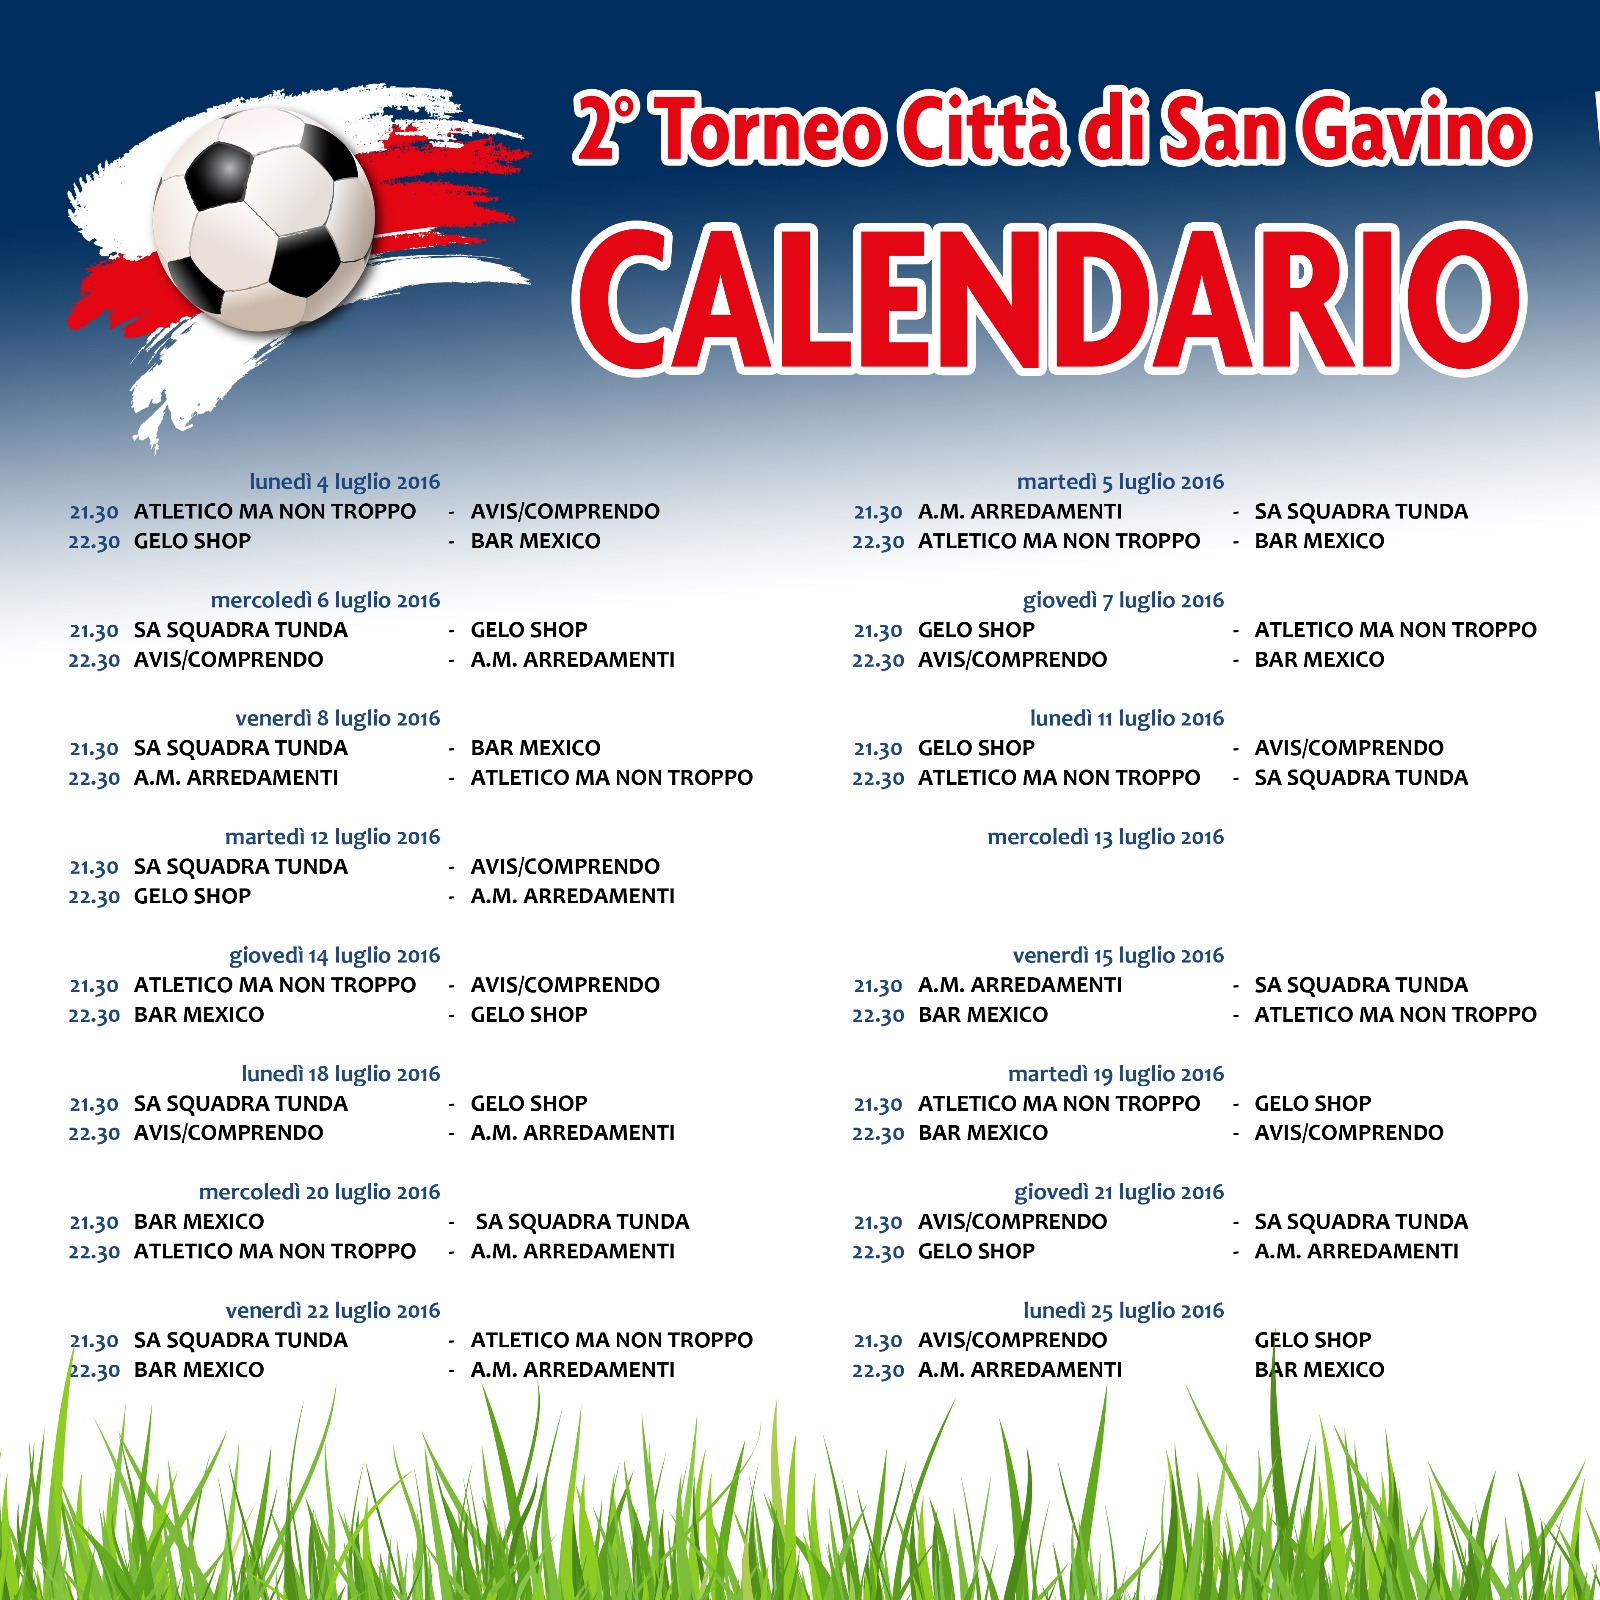 Torneo Città di San Gavino Over 35, il calendario completo